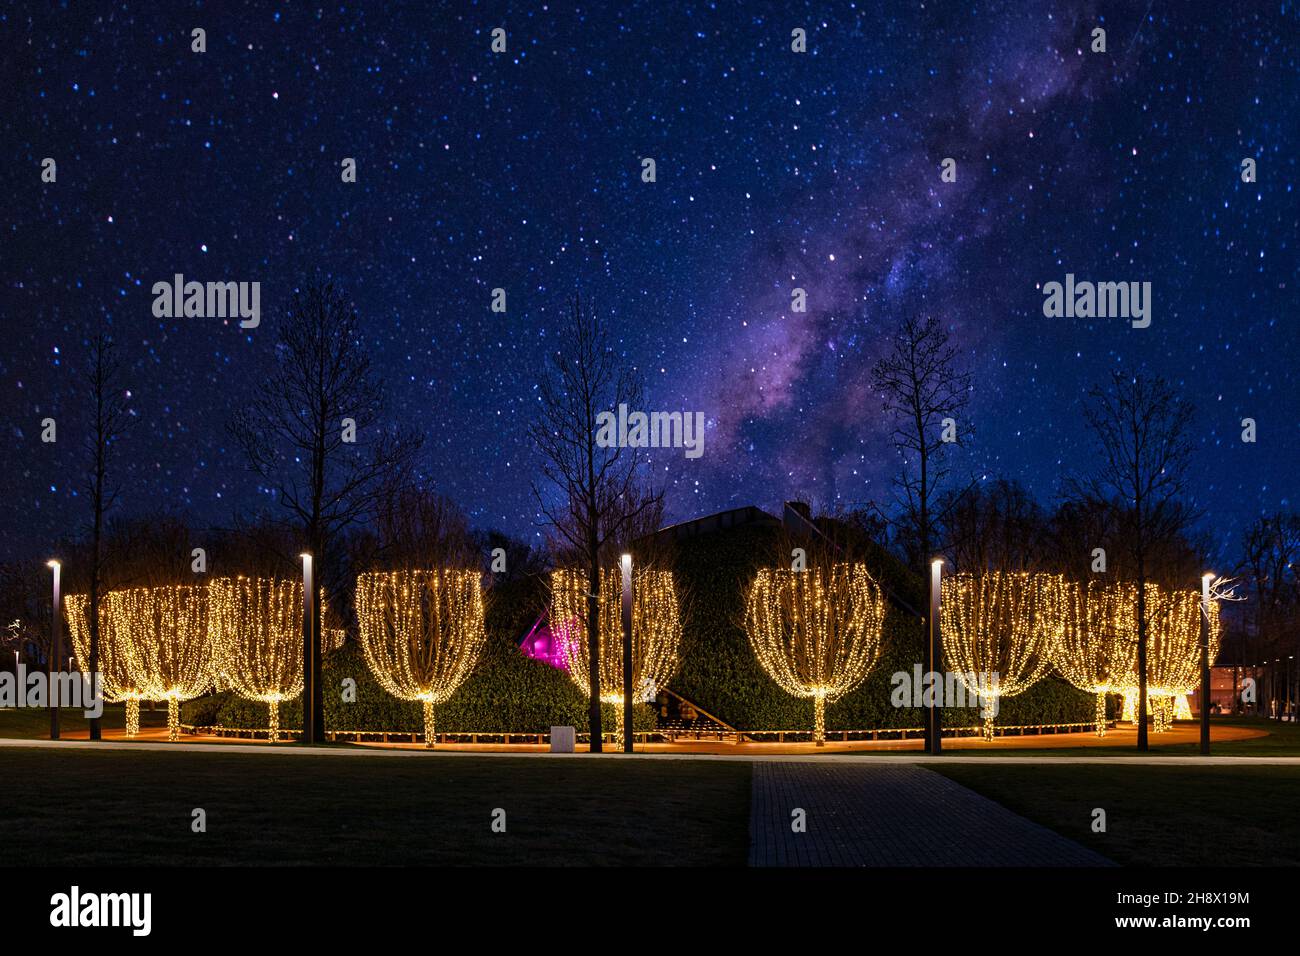 Illuminated trees in a park Stock Photo